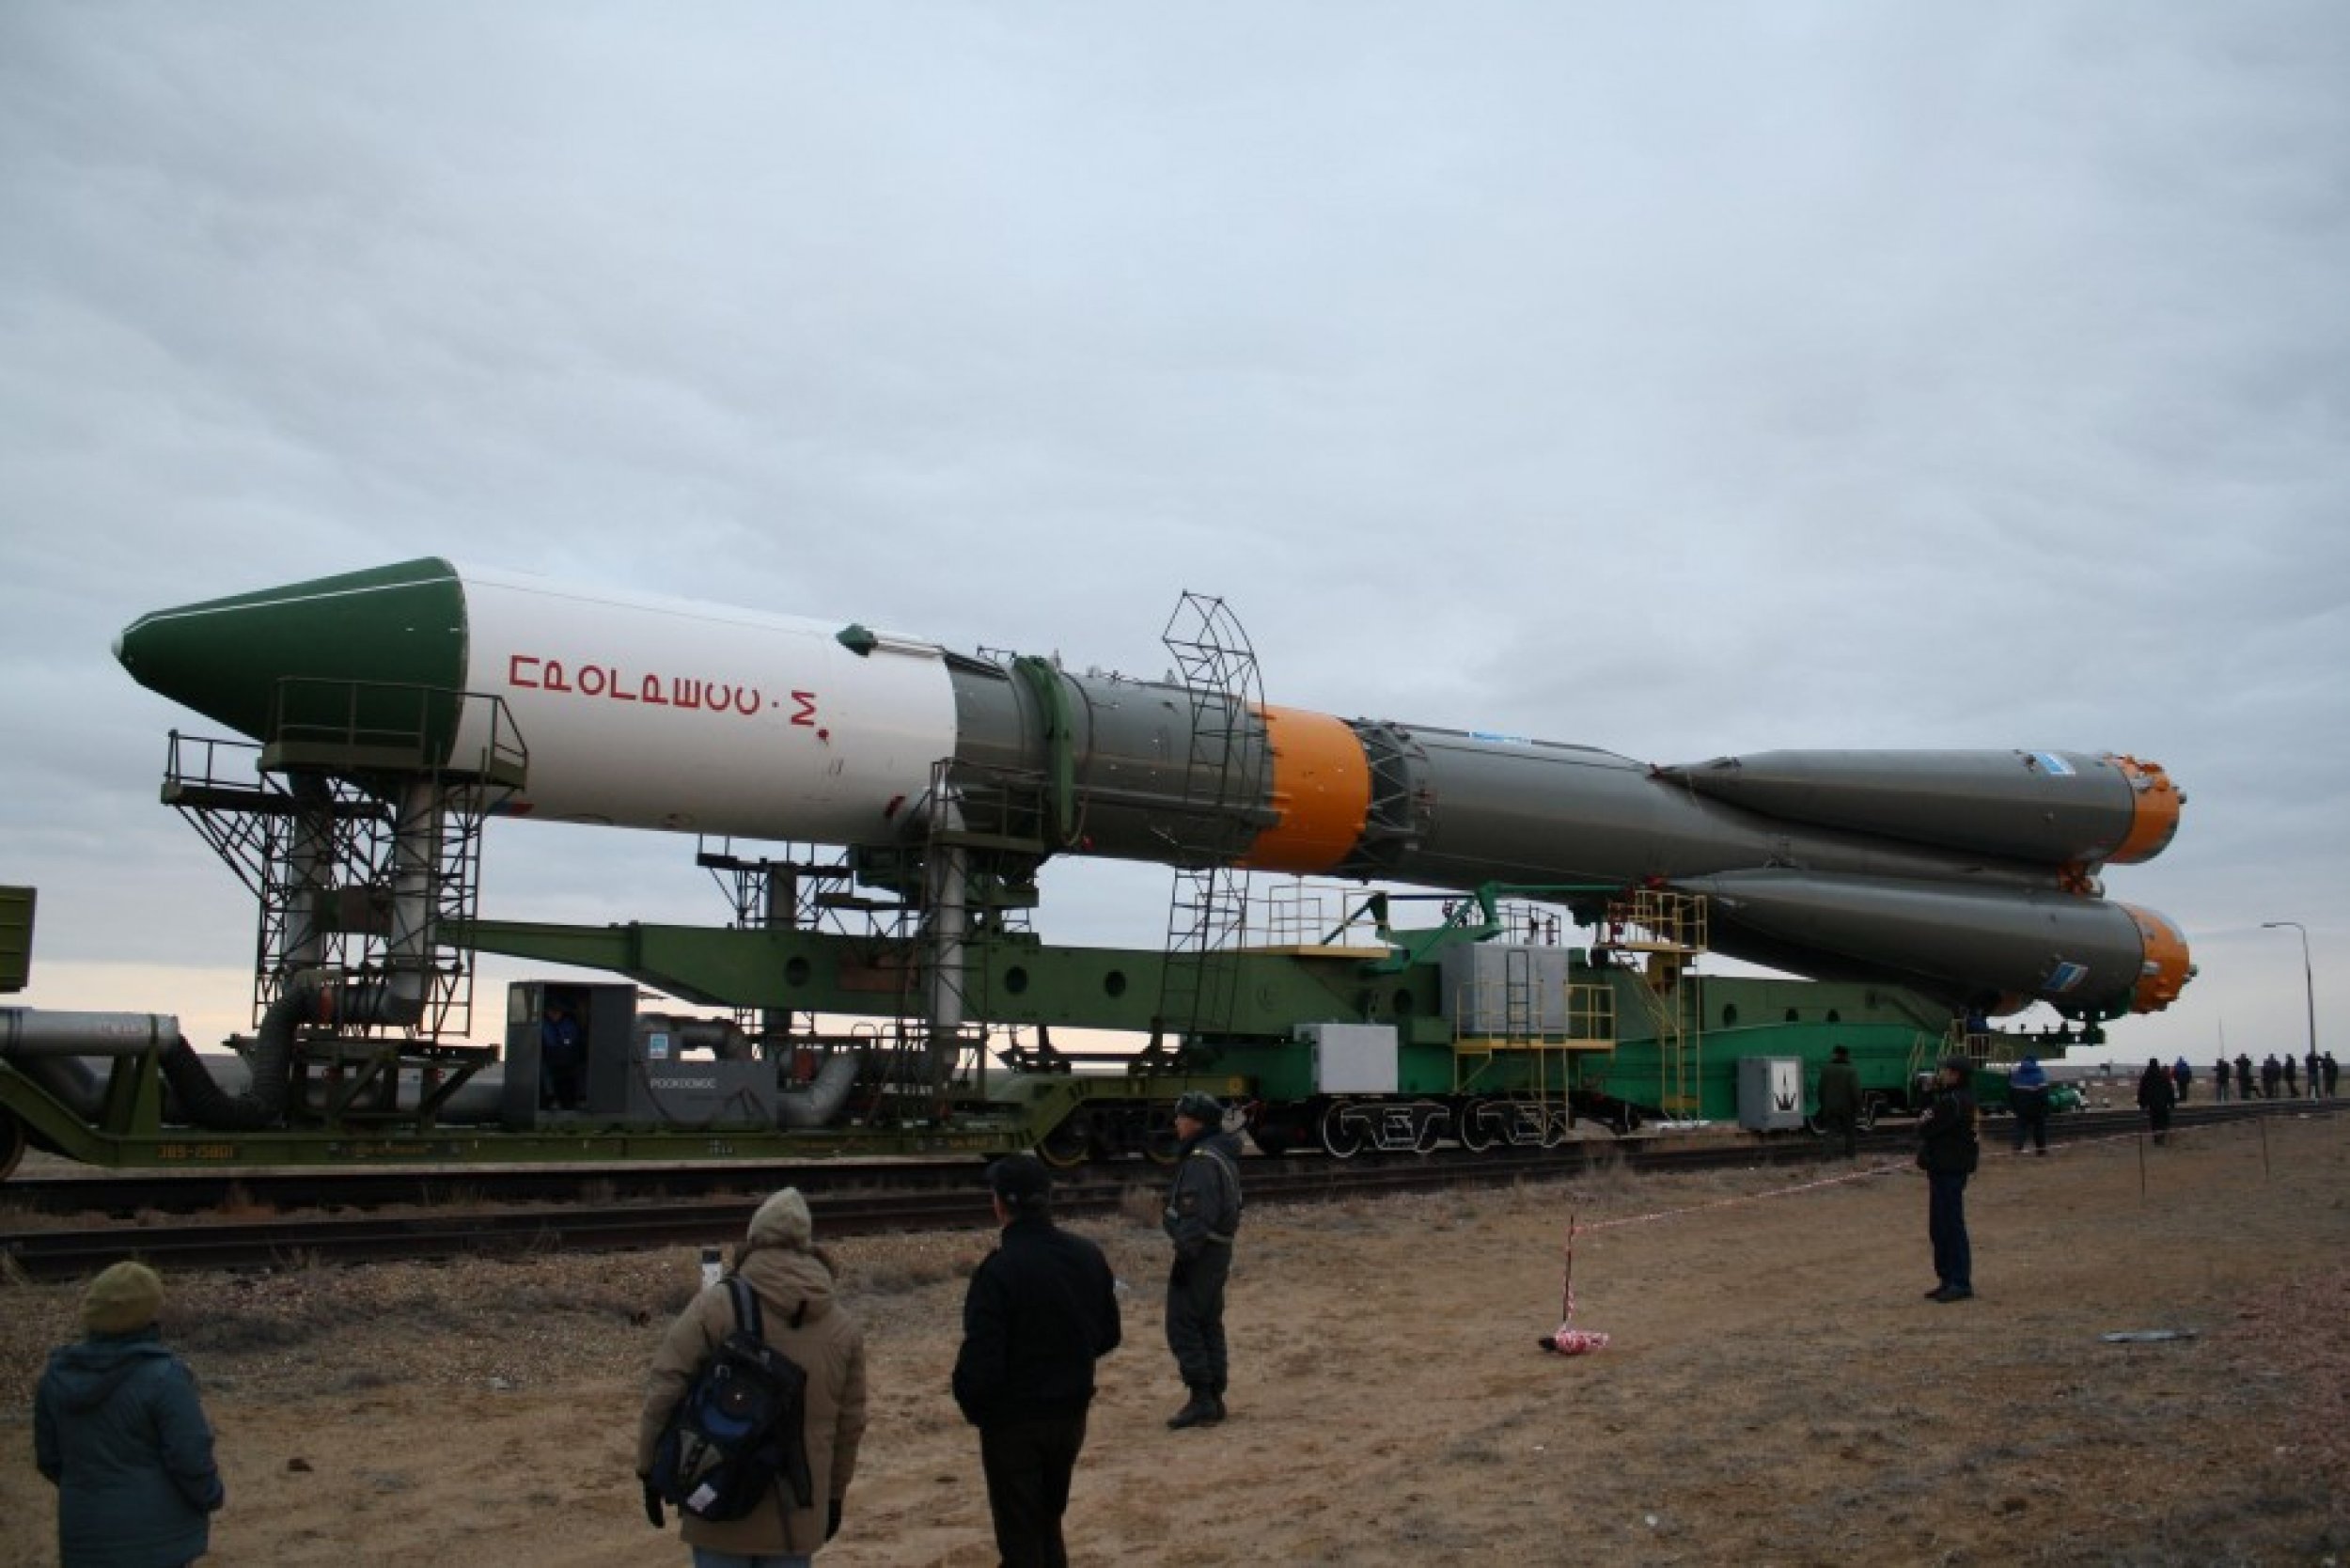 Soyuz 2